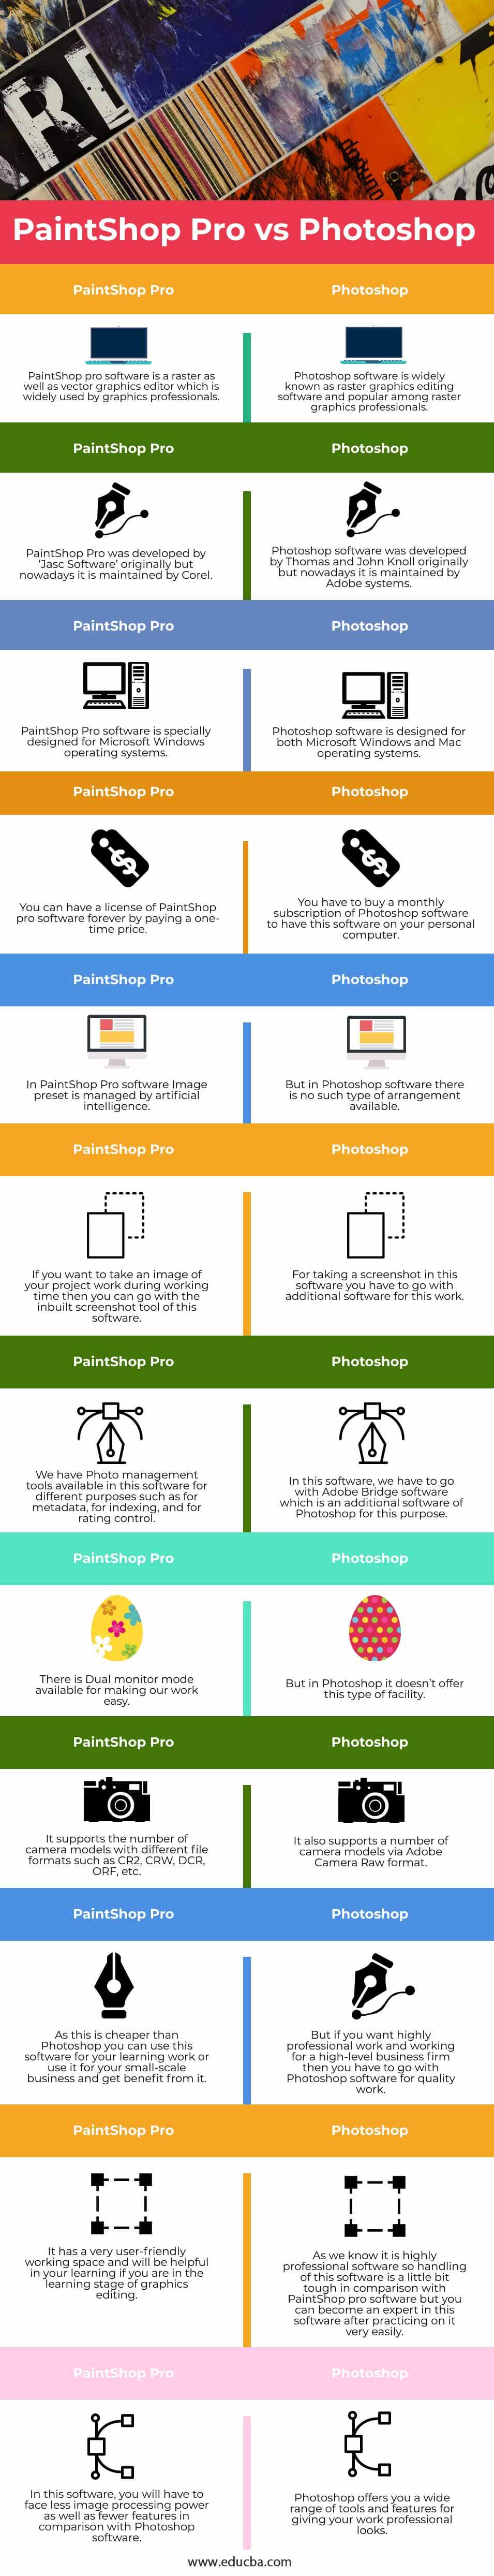 PaintShop-Pro-vs-Photoshop-info